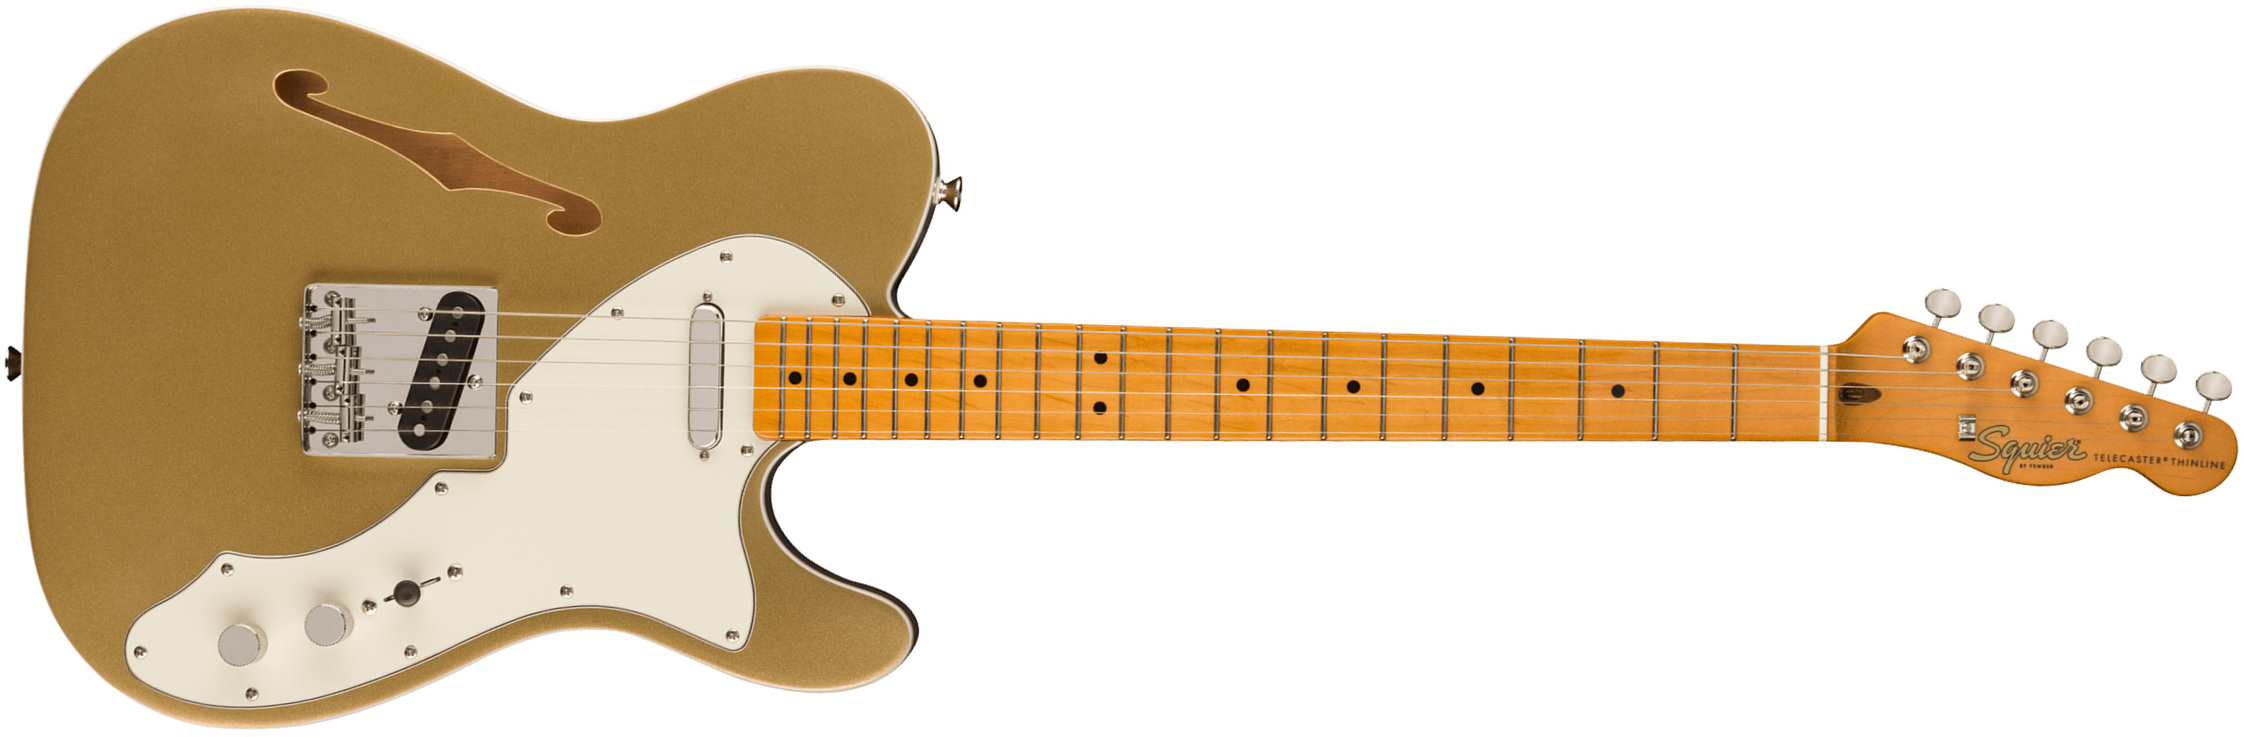 Squier Tele '60s Thinline Parchment Pickguard Classic Vibe Fsr 2s Ht Mn - Aztec Gold - Tel shape electric guitar - Main picture